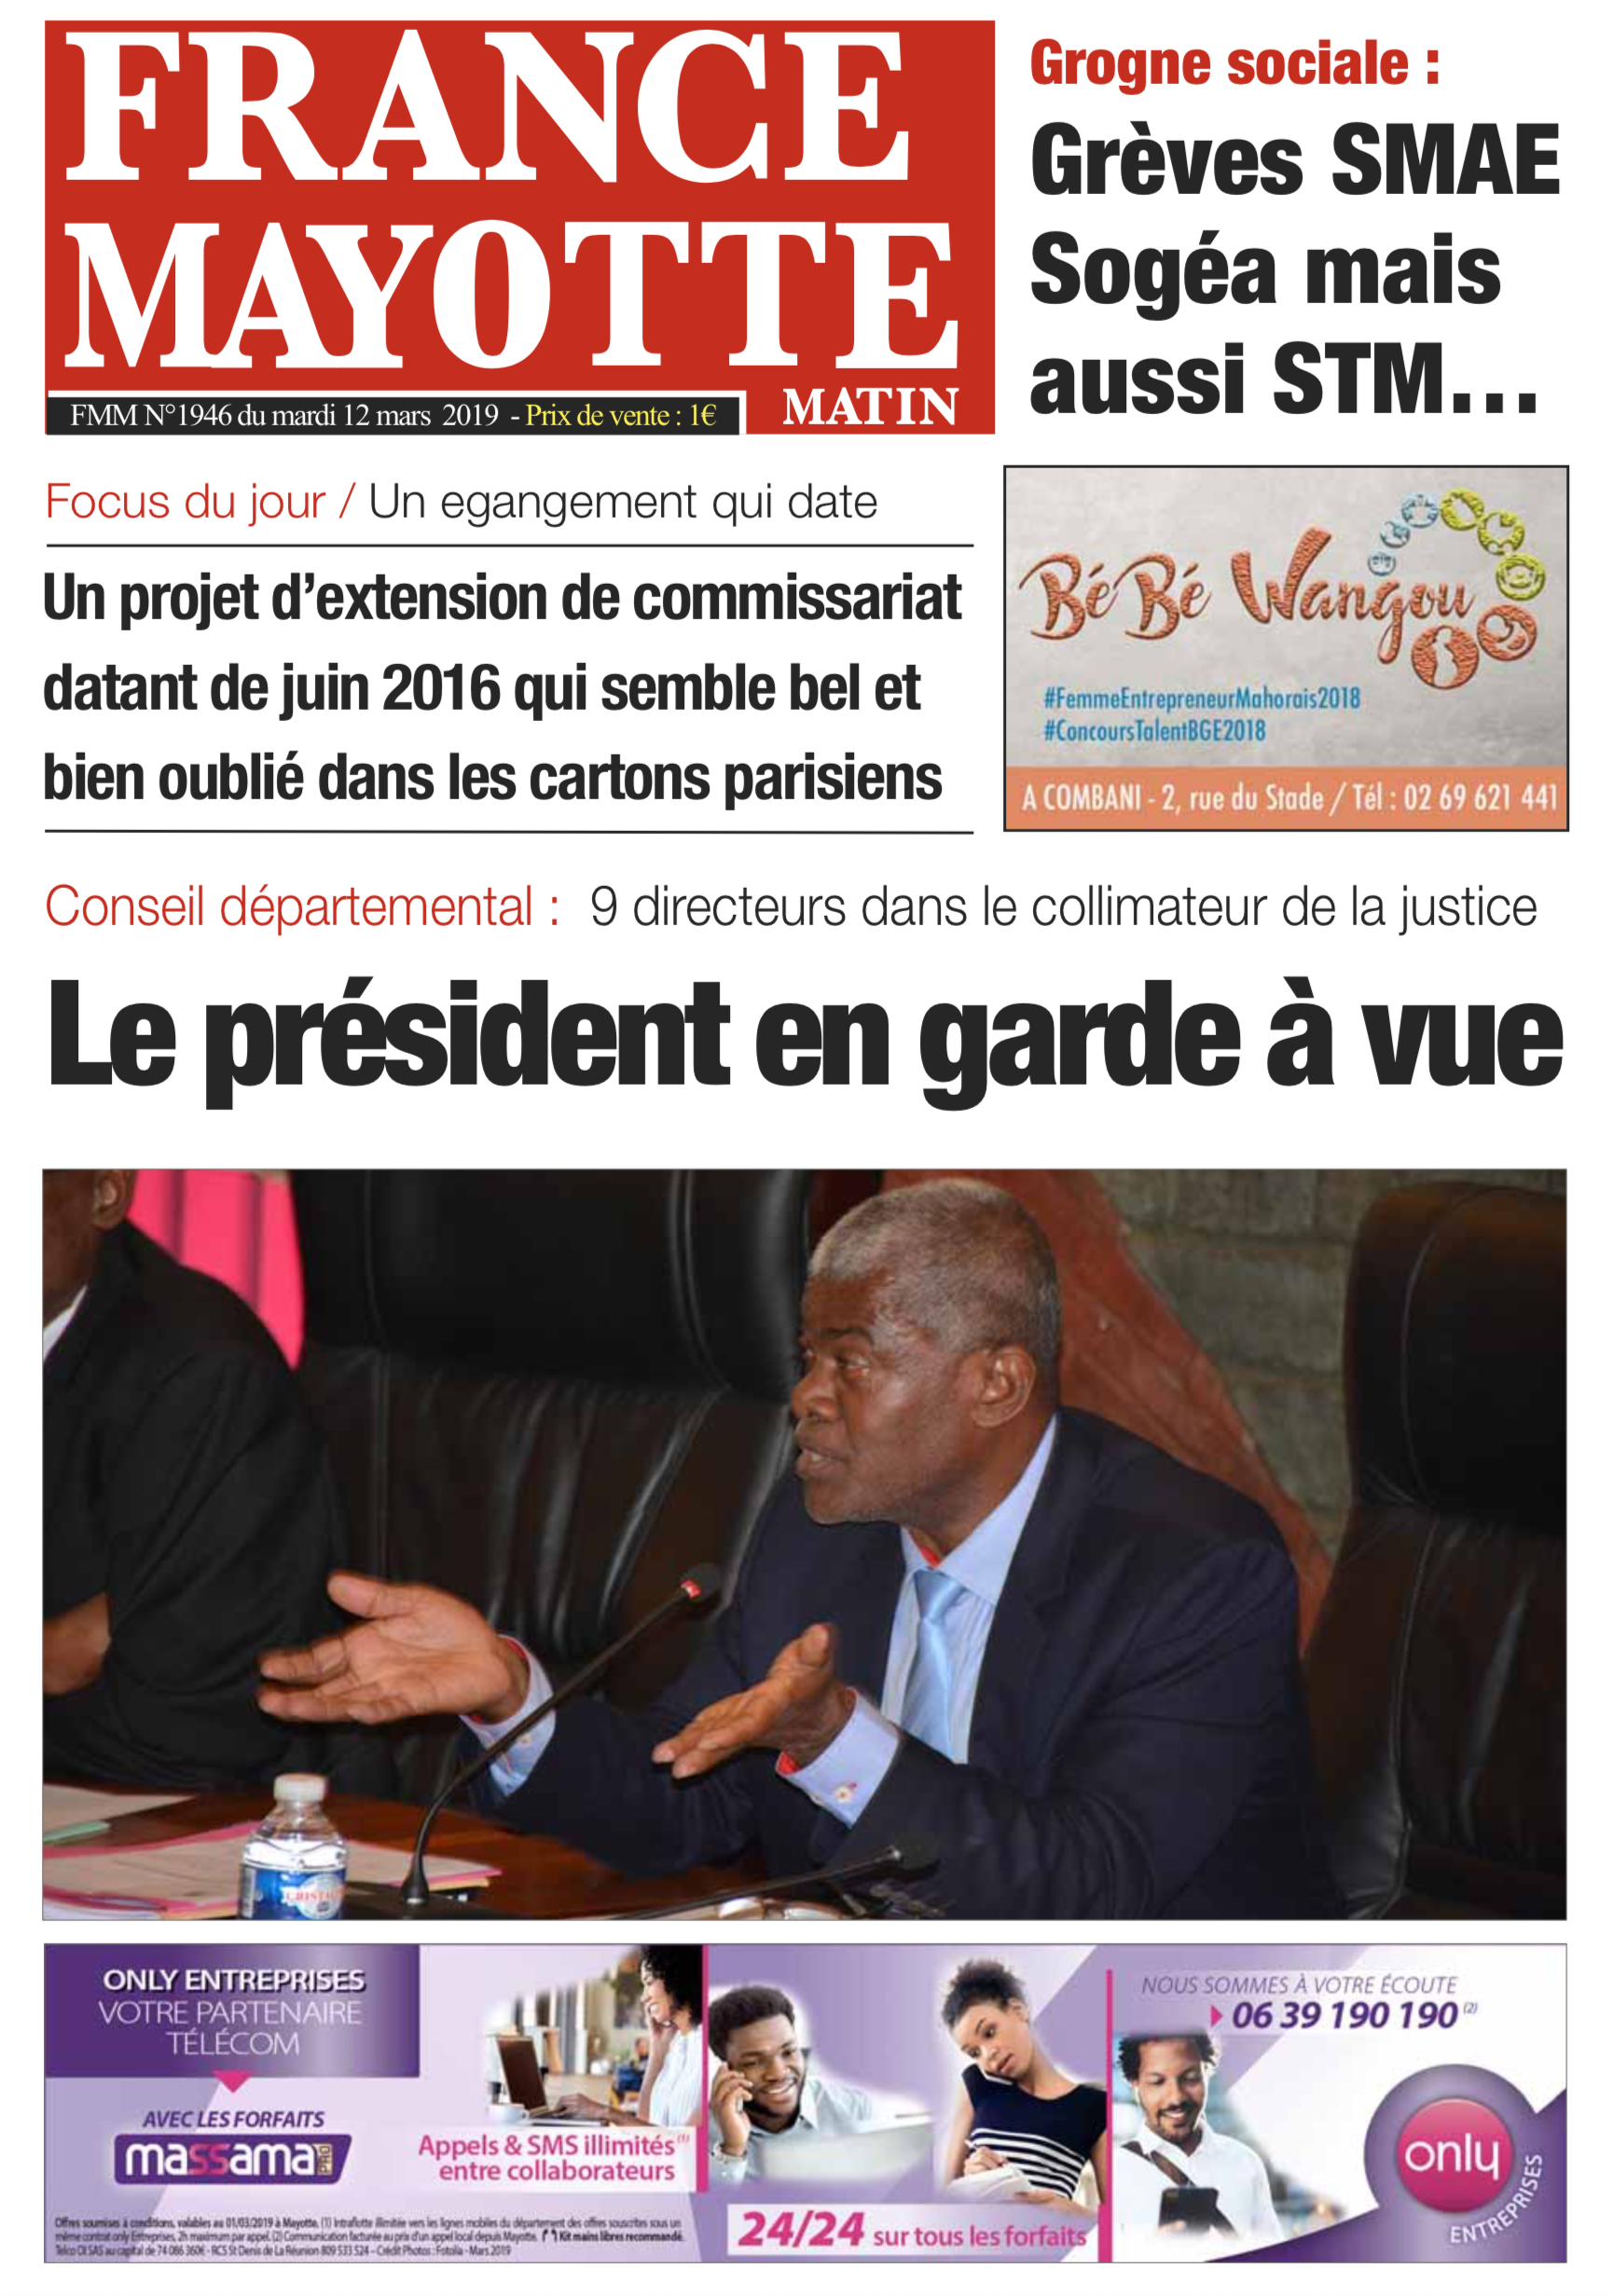 France Mayotte Mardi 12 mars 2019